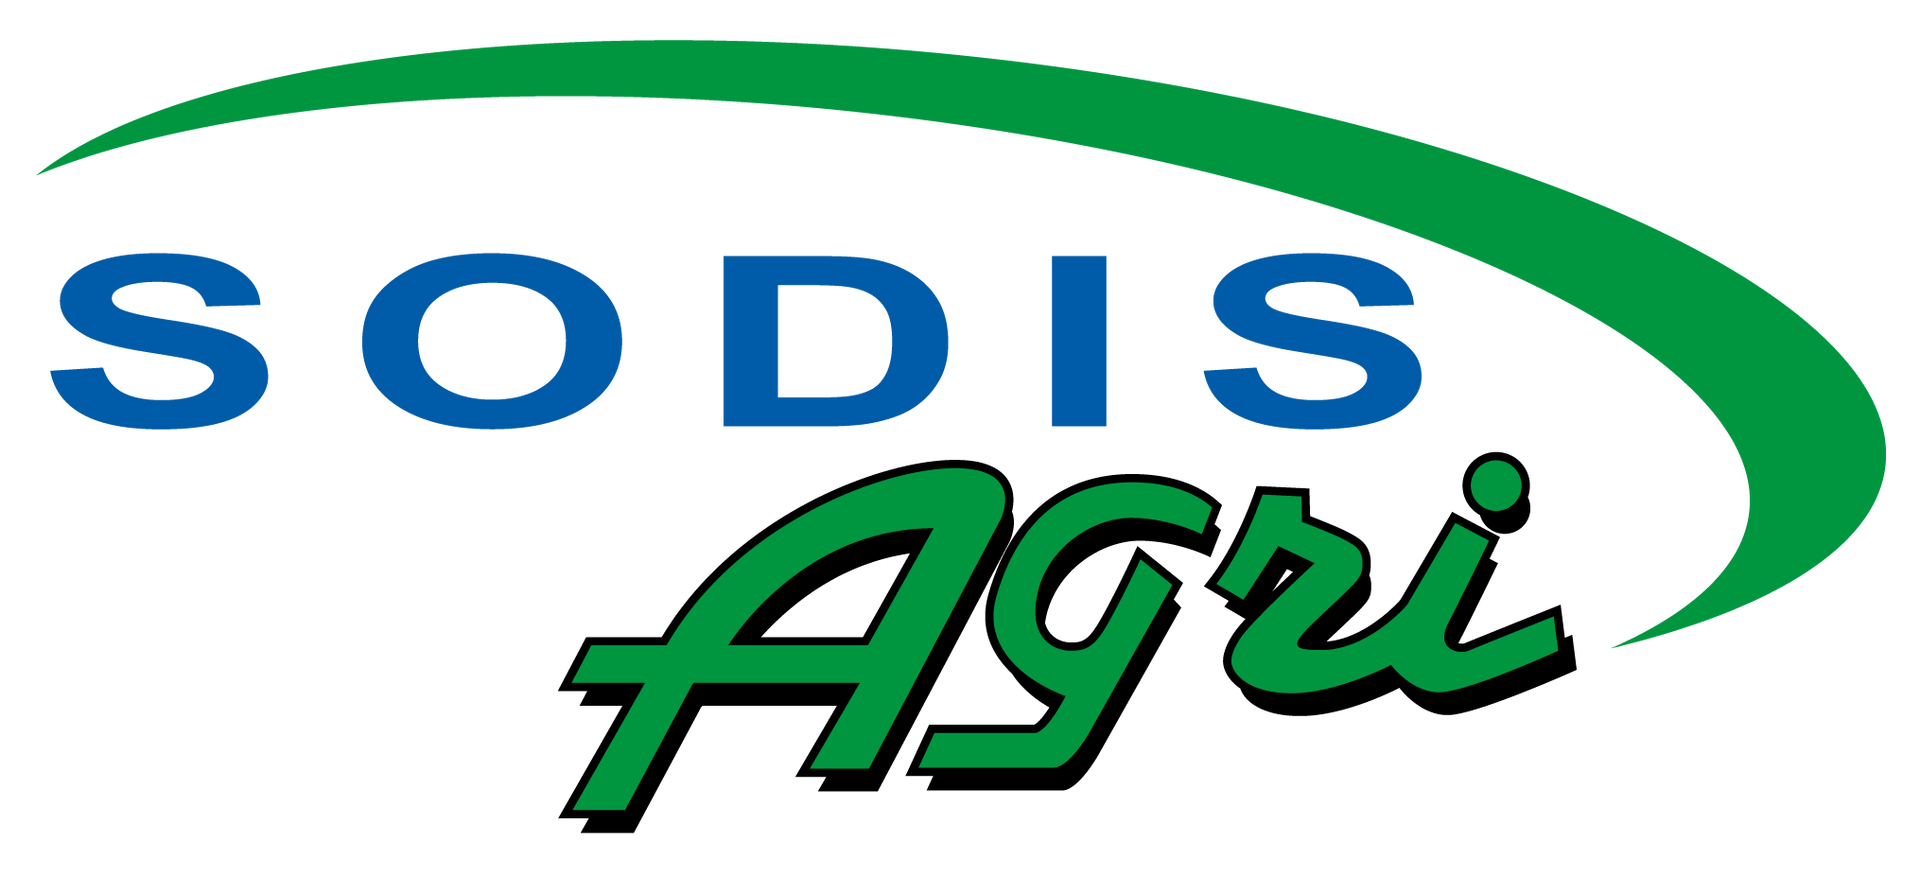 Logo entreprise SODIS Agri